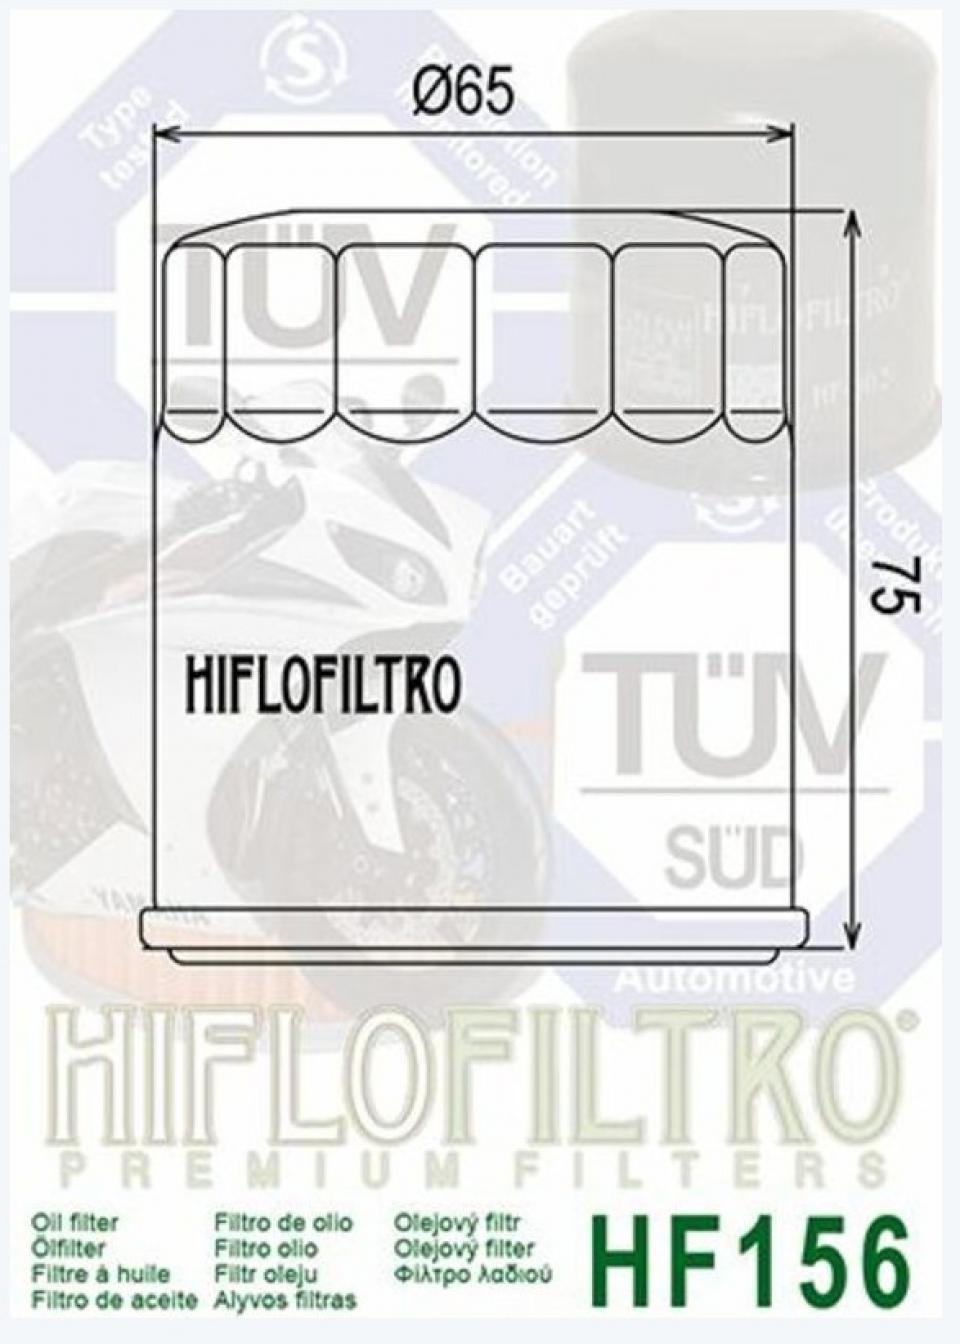 Filtre à huile Hiflofiltro pour Moto KTM 400 LC4 GS 1993 à 1998 HF156 / 583.38.045.000/100/101 Neuf